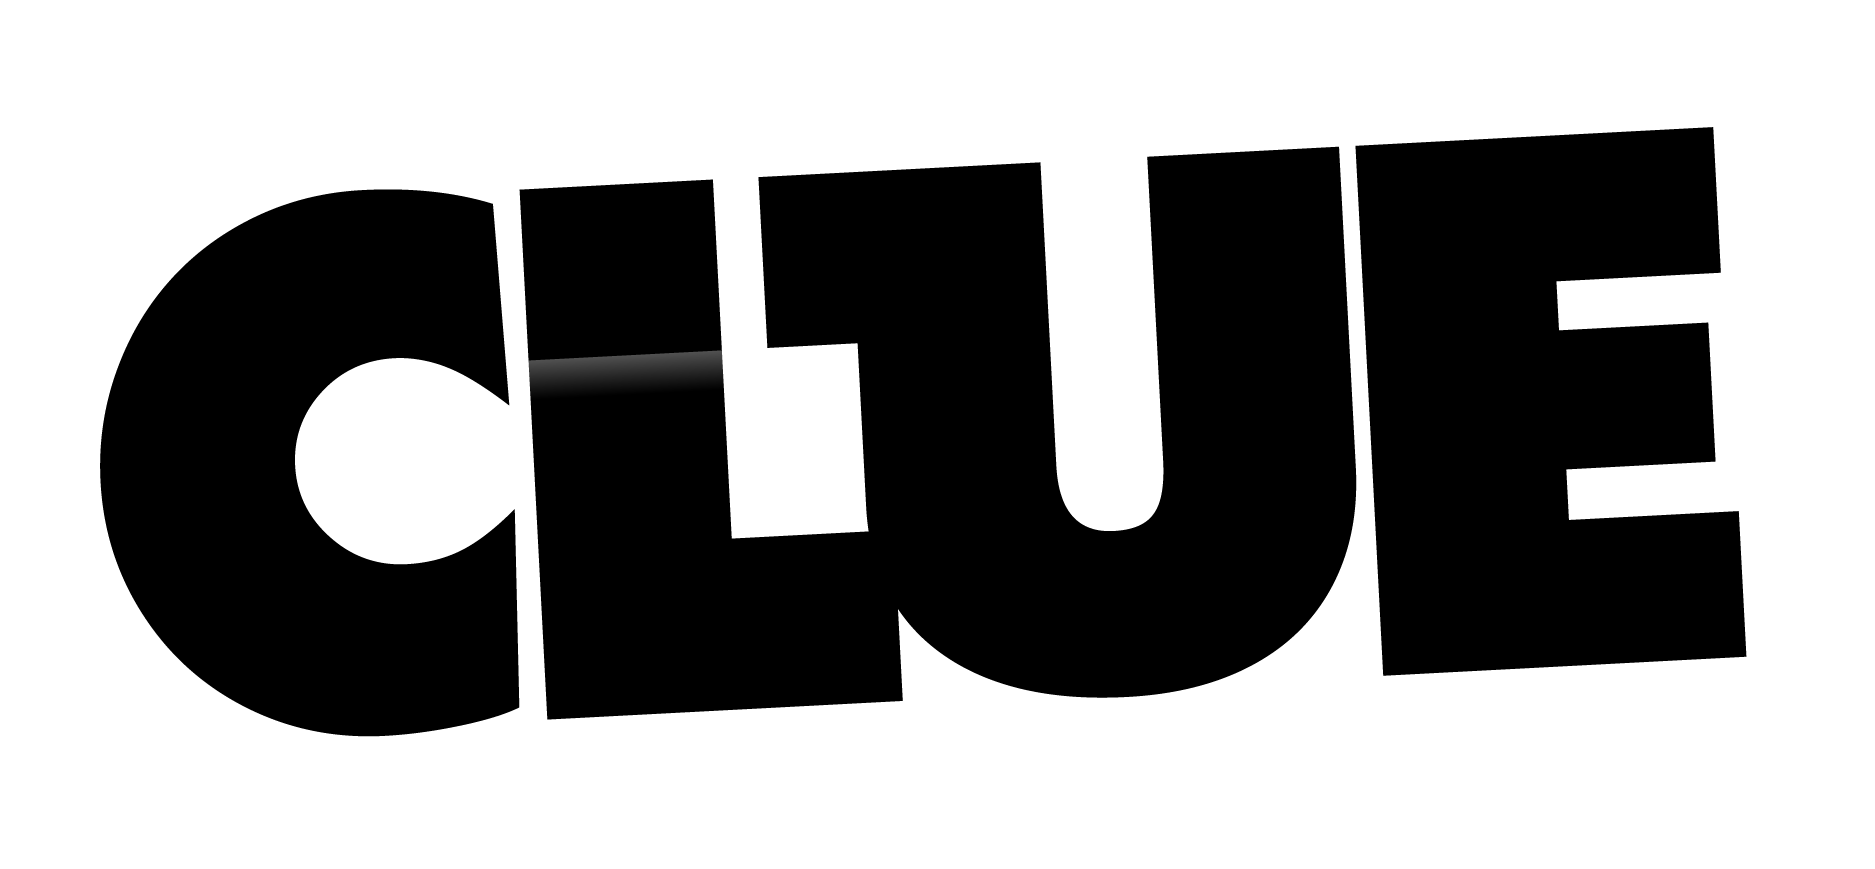 Clue Logo - clue logo | CLUE_logo-01 | Board game party | Clue games, Game logo ...